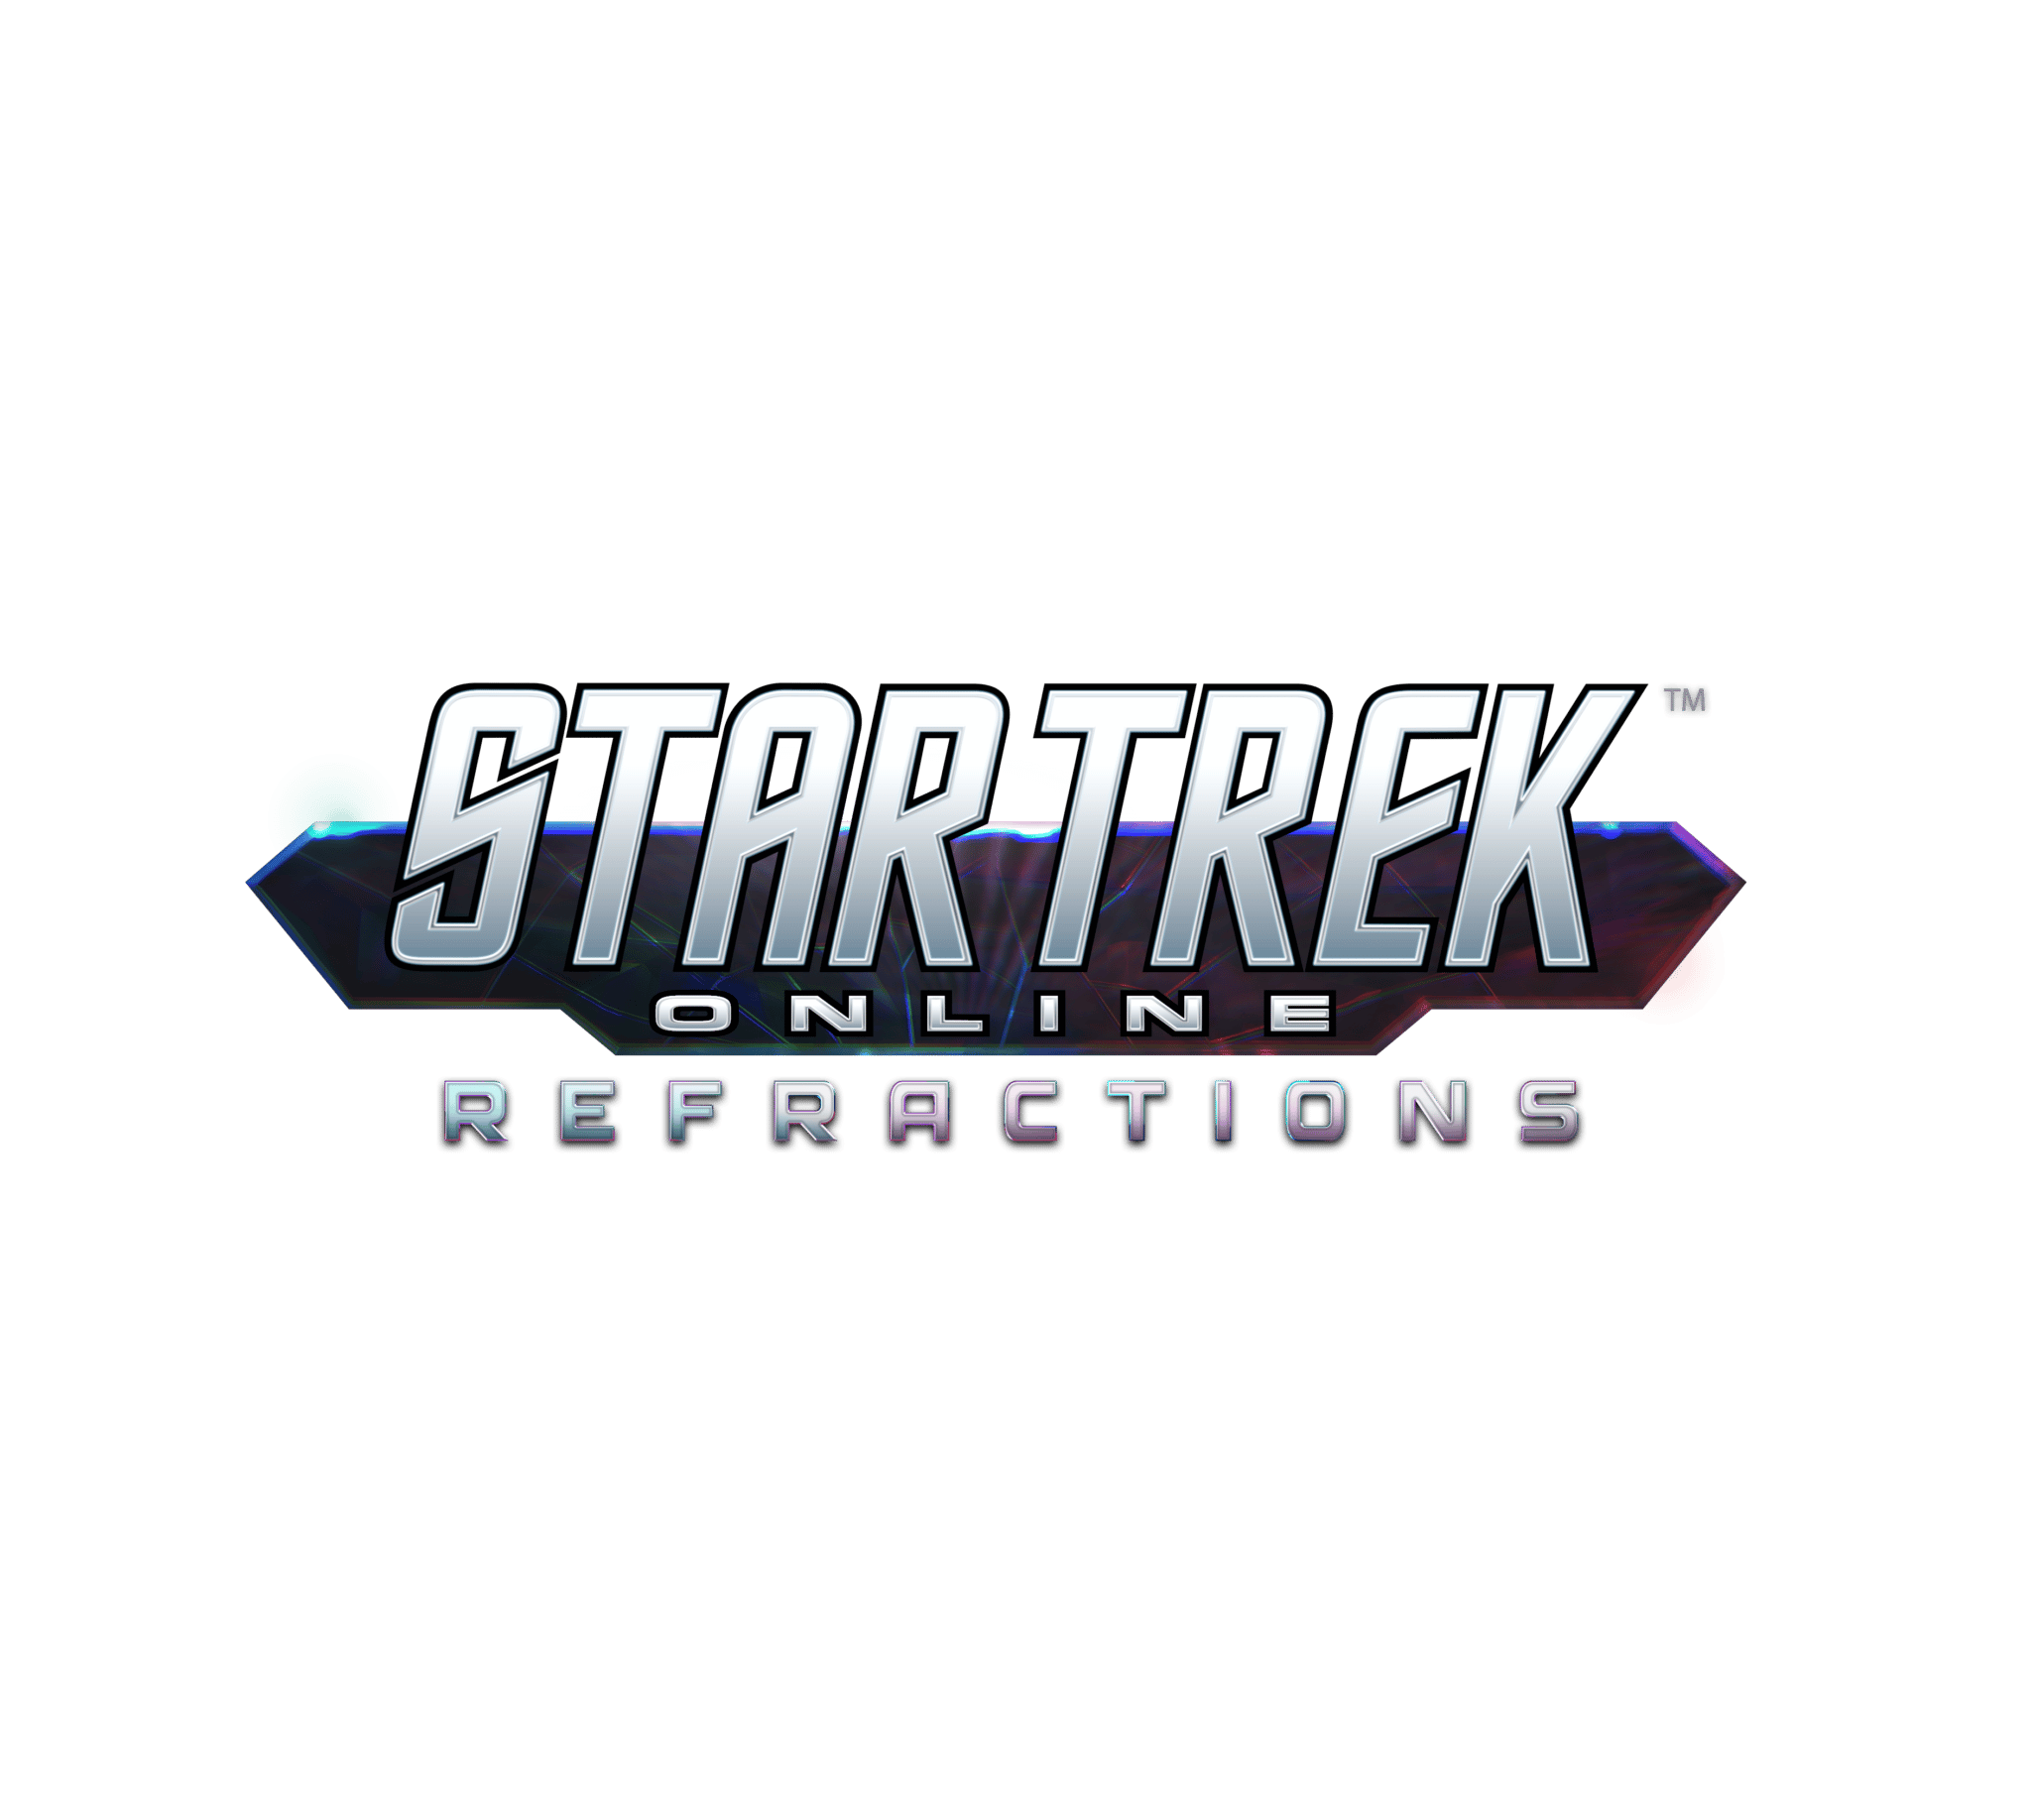 STAR TREK ONLINE: REFRACTIONS Logo